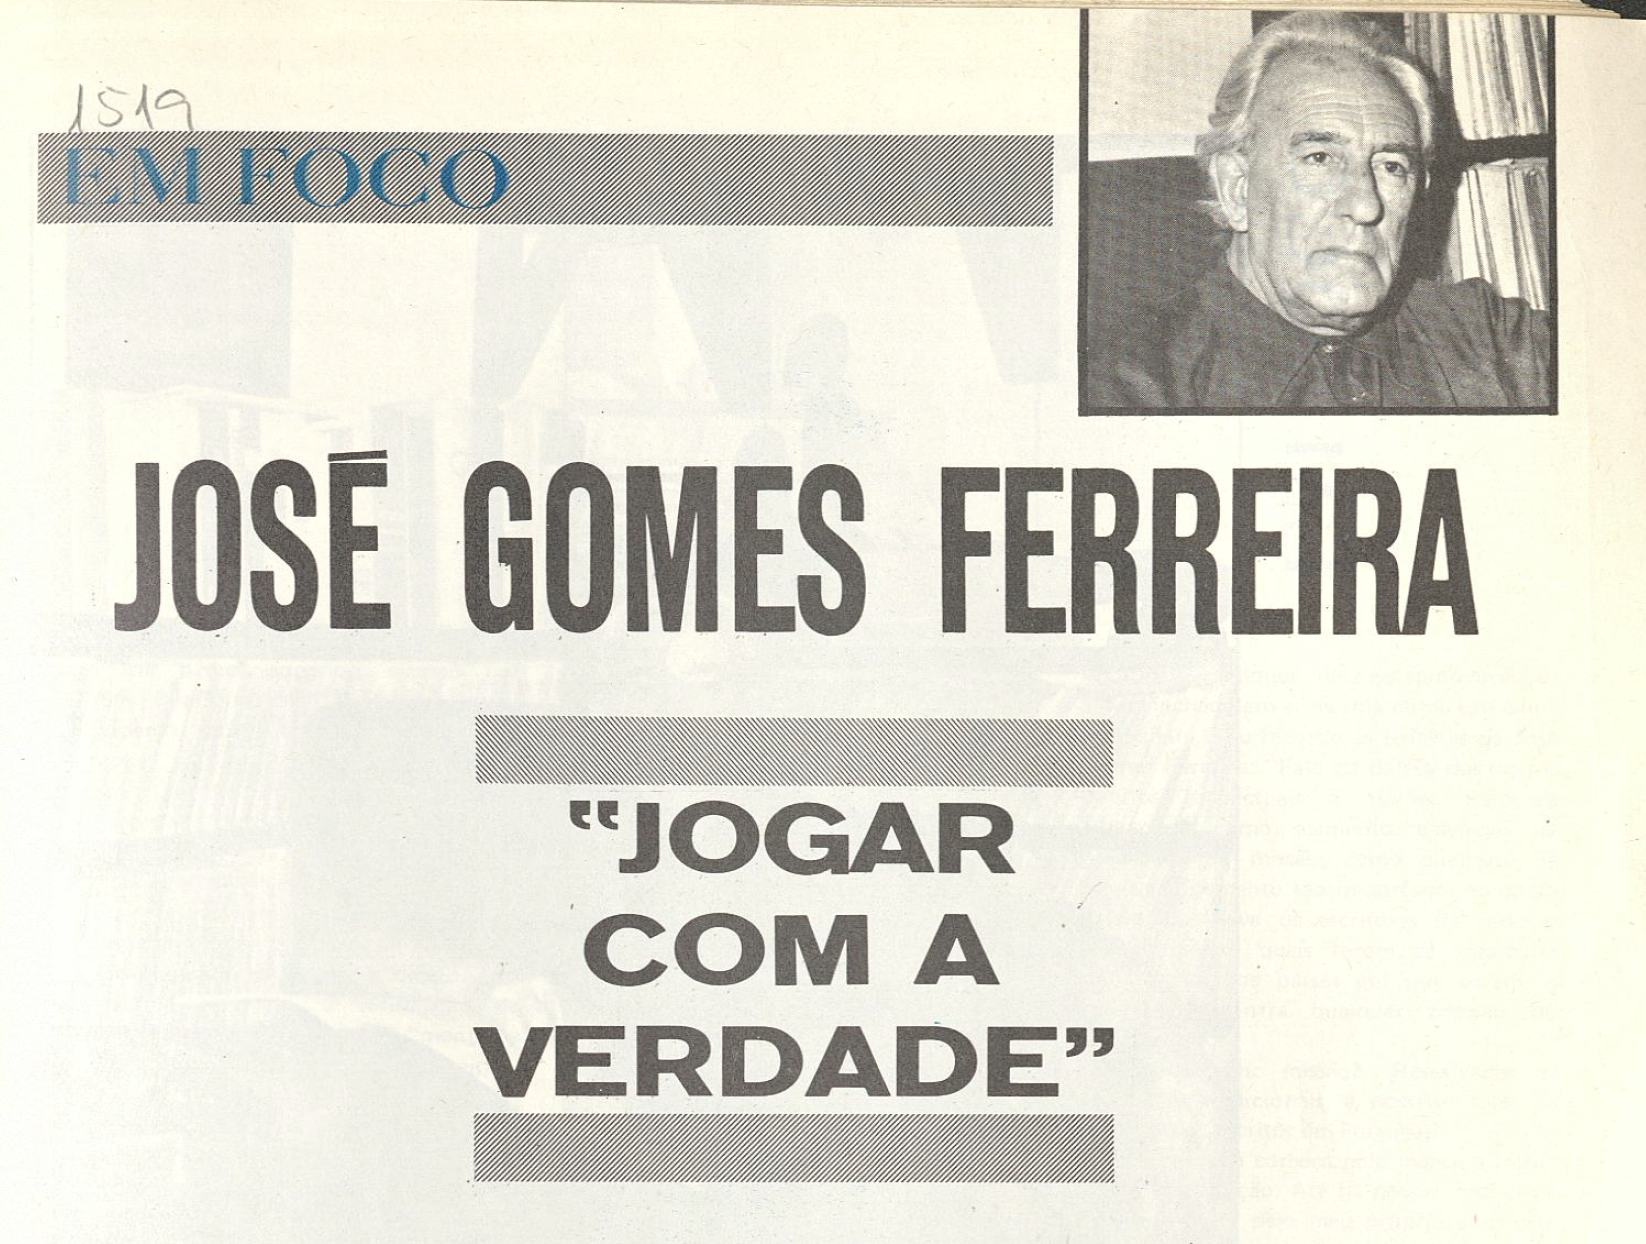 "José Gomes Ferrira "Jogar com a verdade""